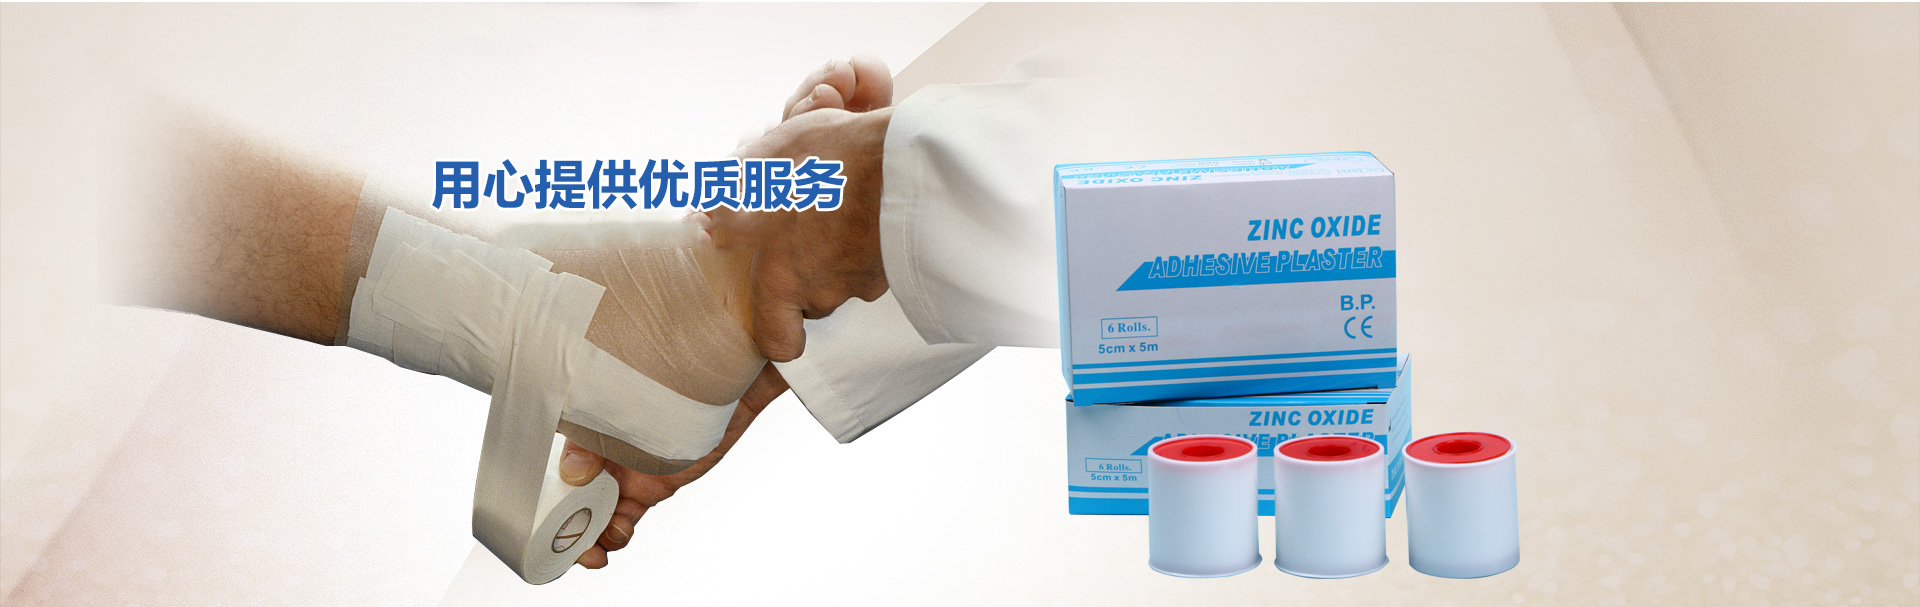 邦立医药-浙江邦立-邦立医药用品-是一家生产型以出口为主的企业